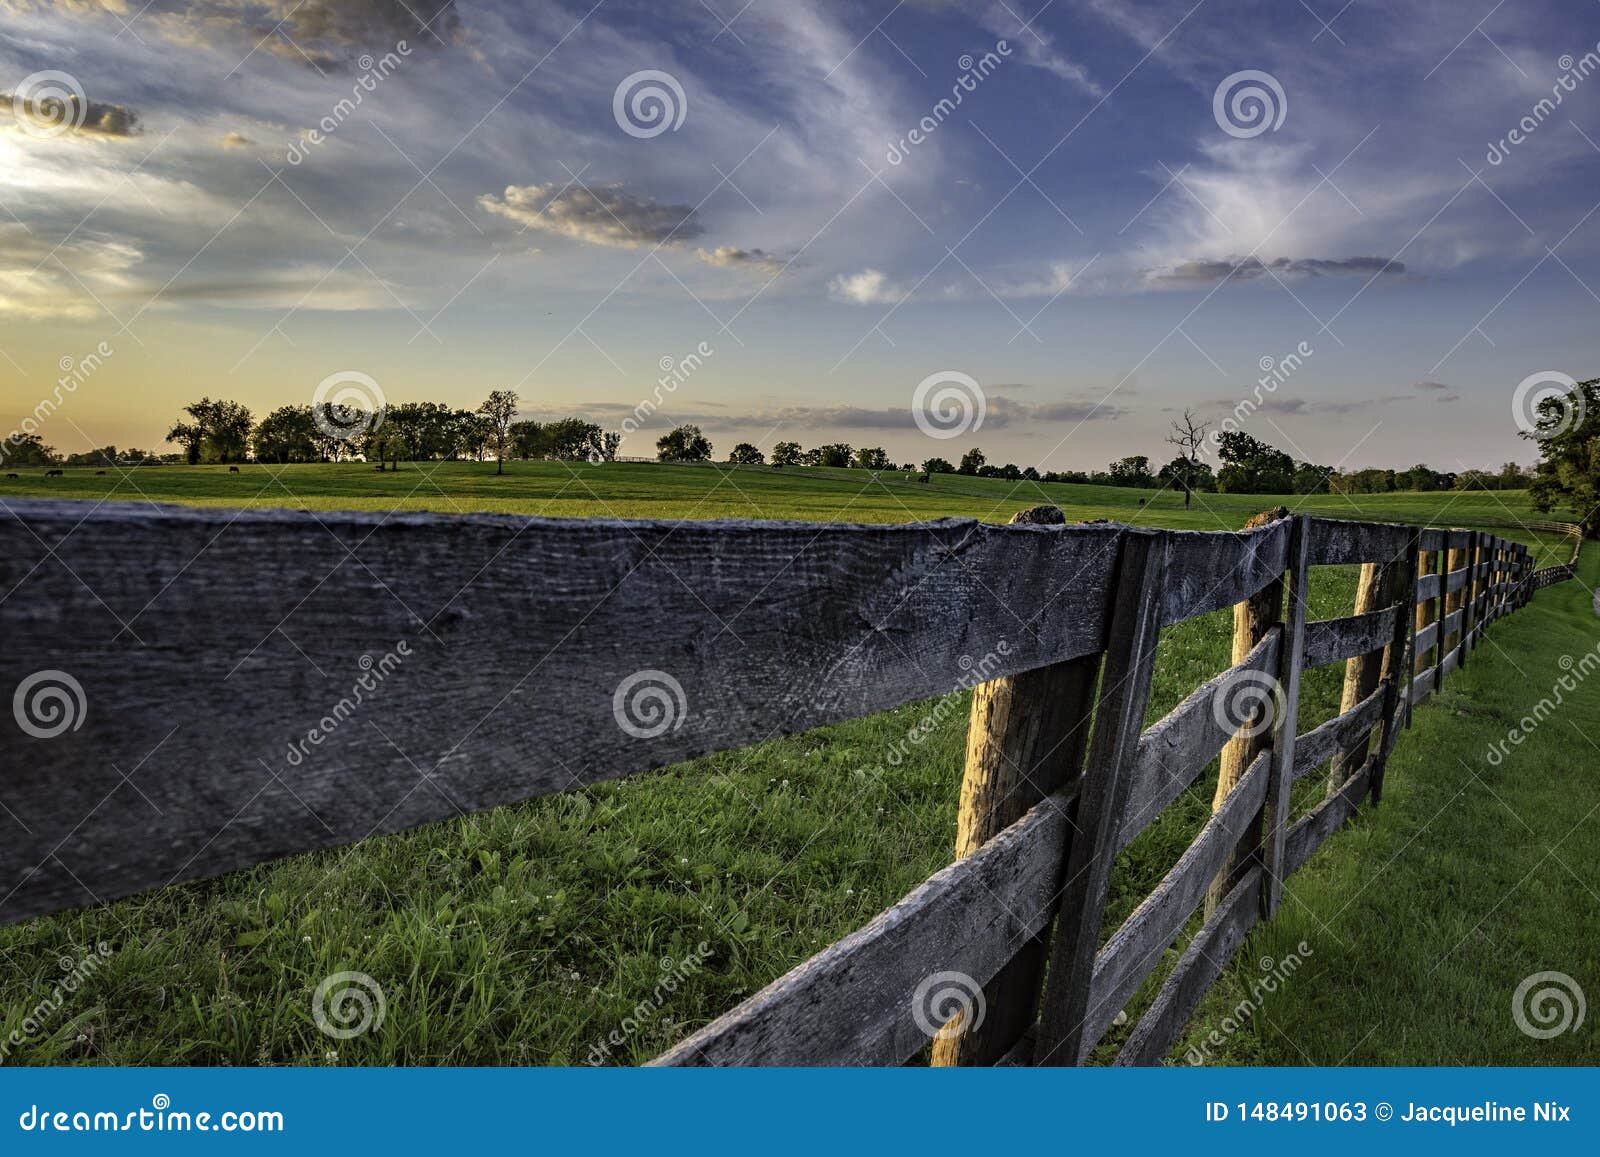 wooden rail fence in kentucky bluegrass region